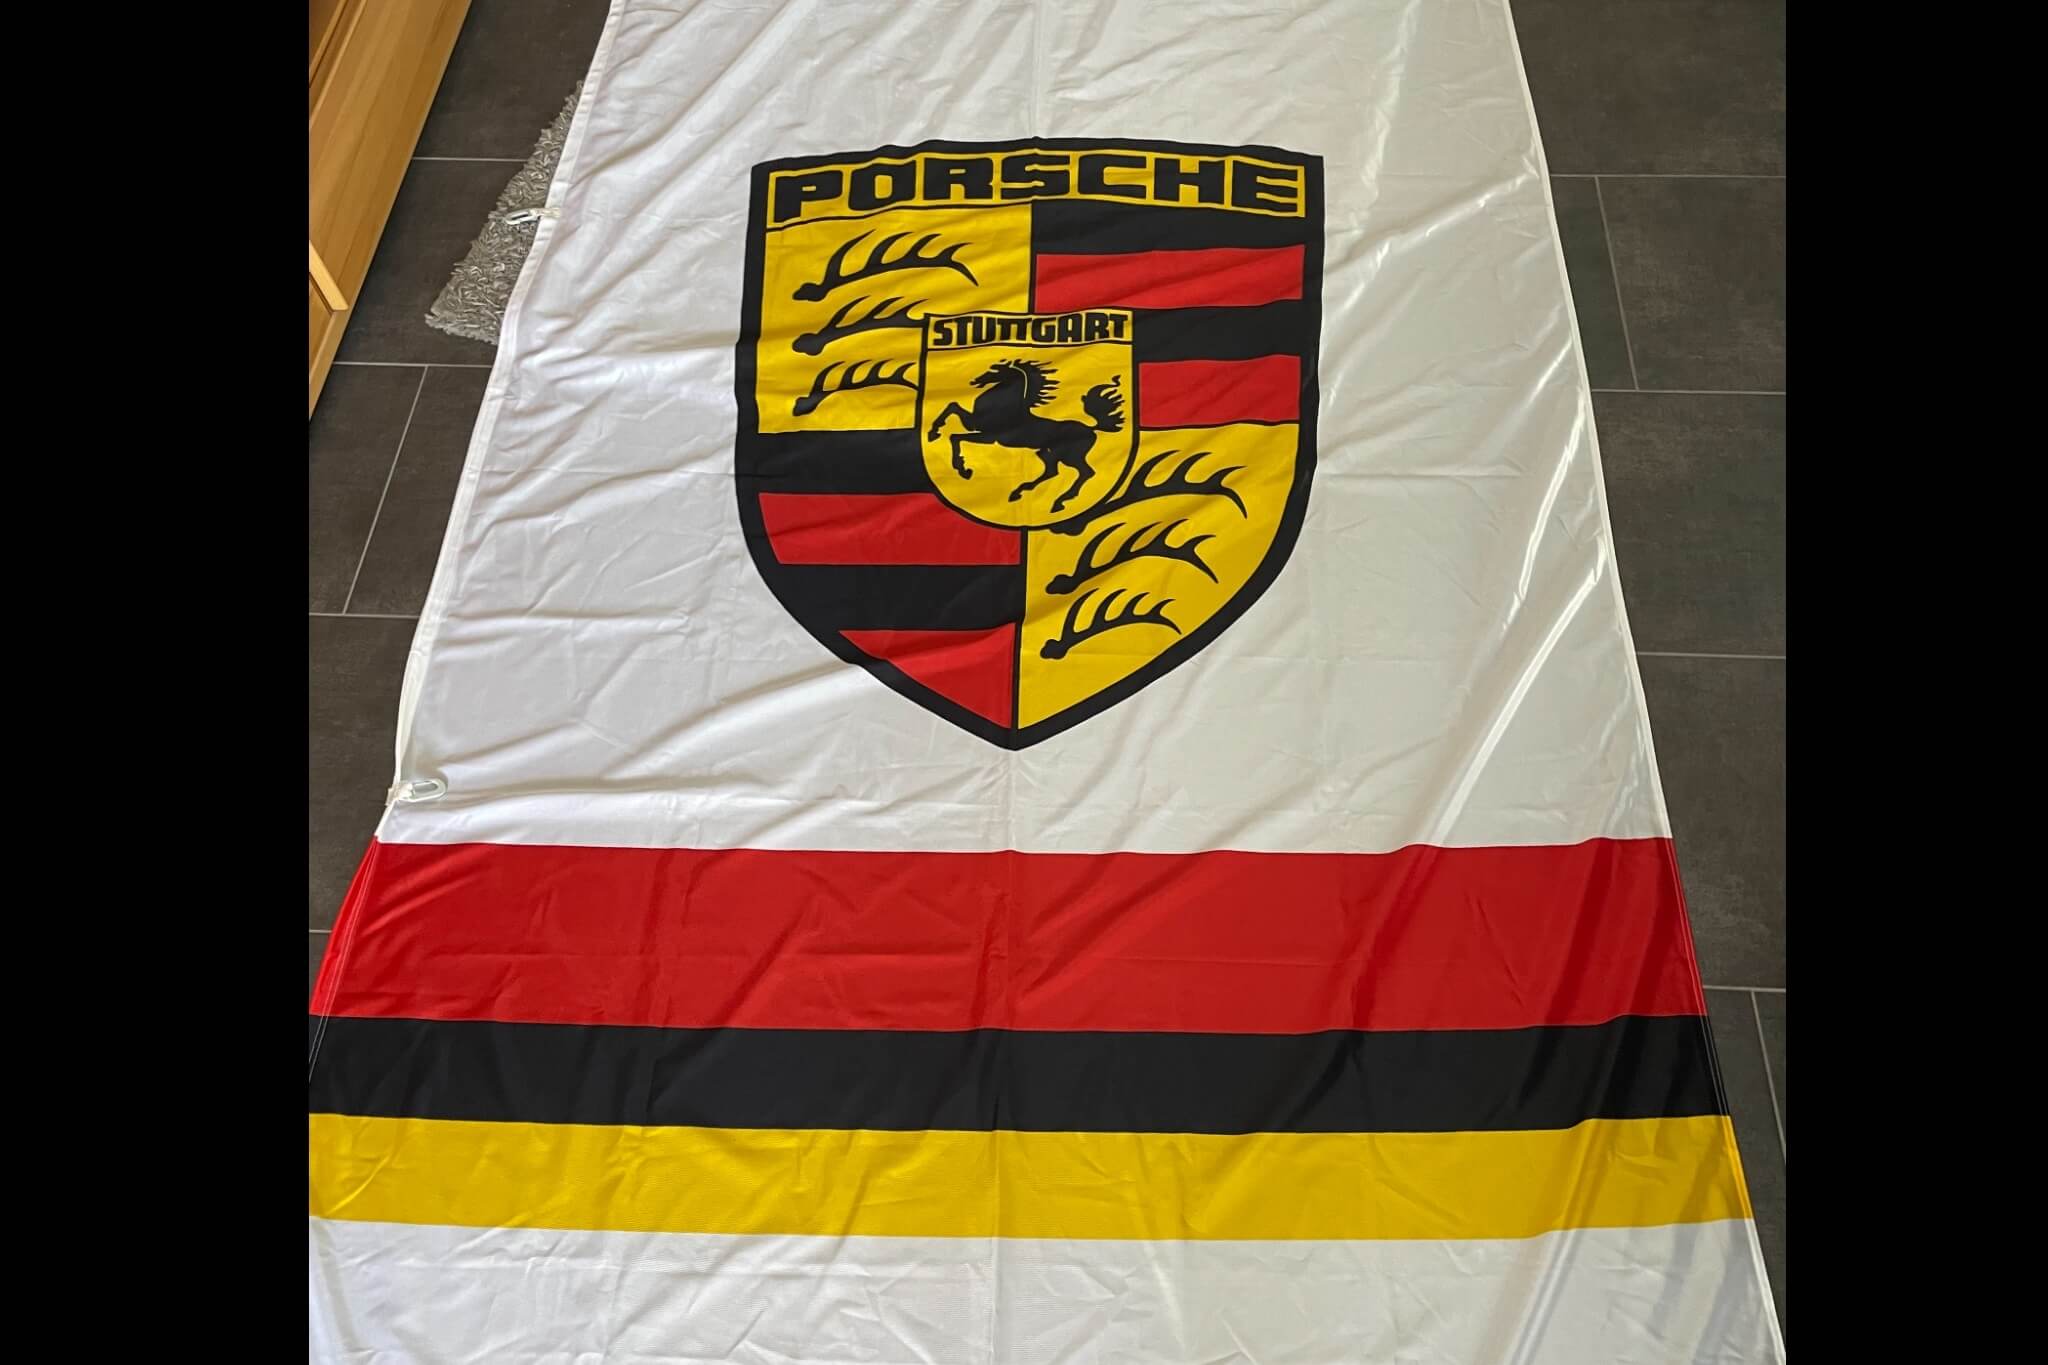  Authentic Porsche Dealership Flag